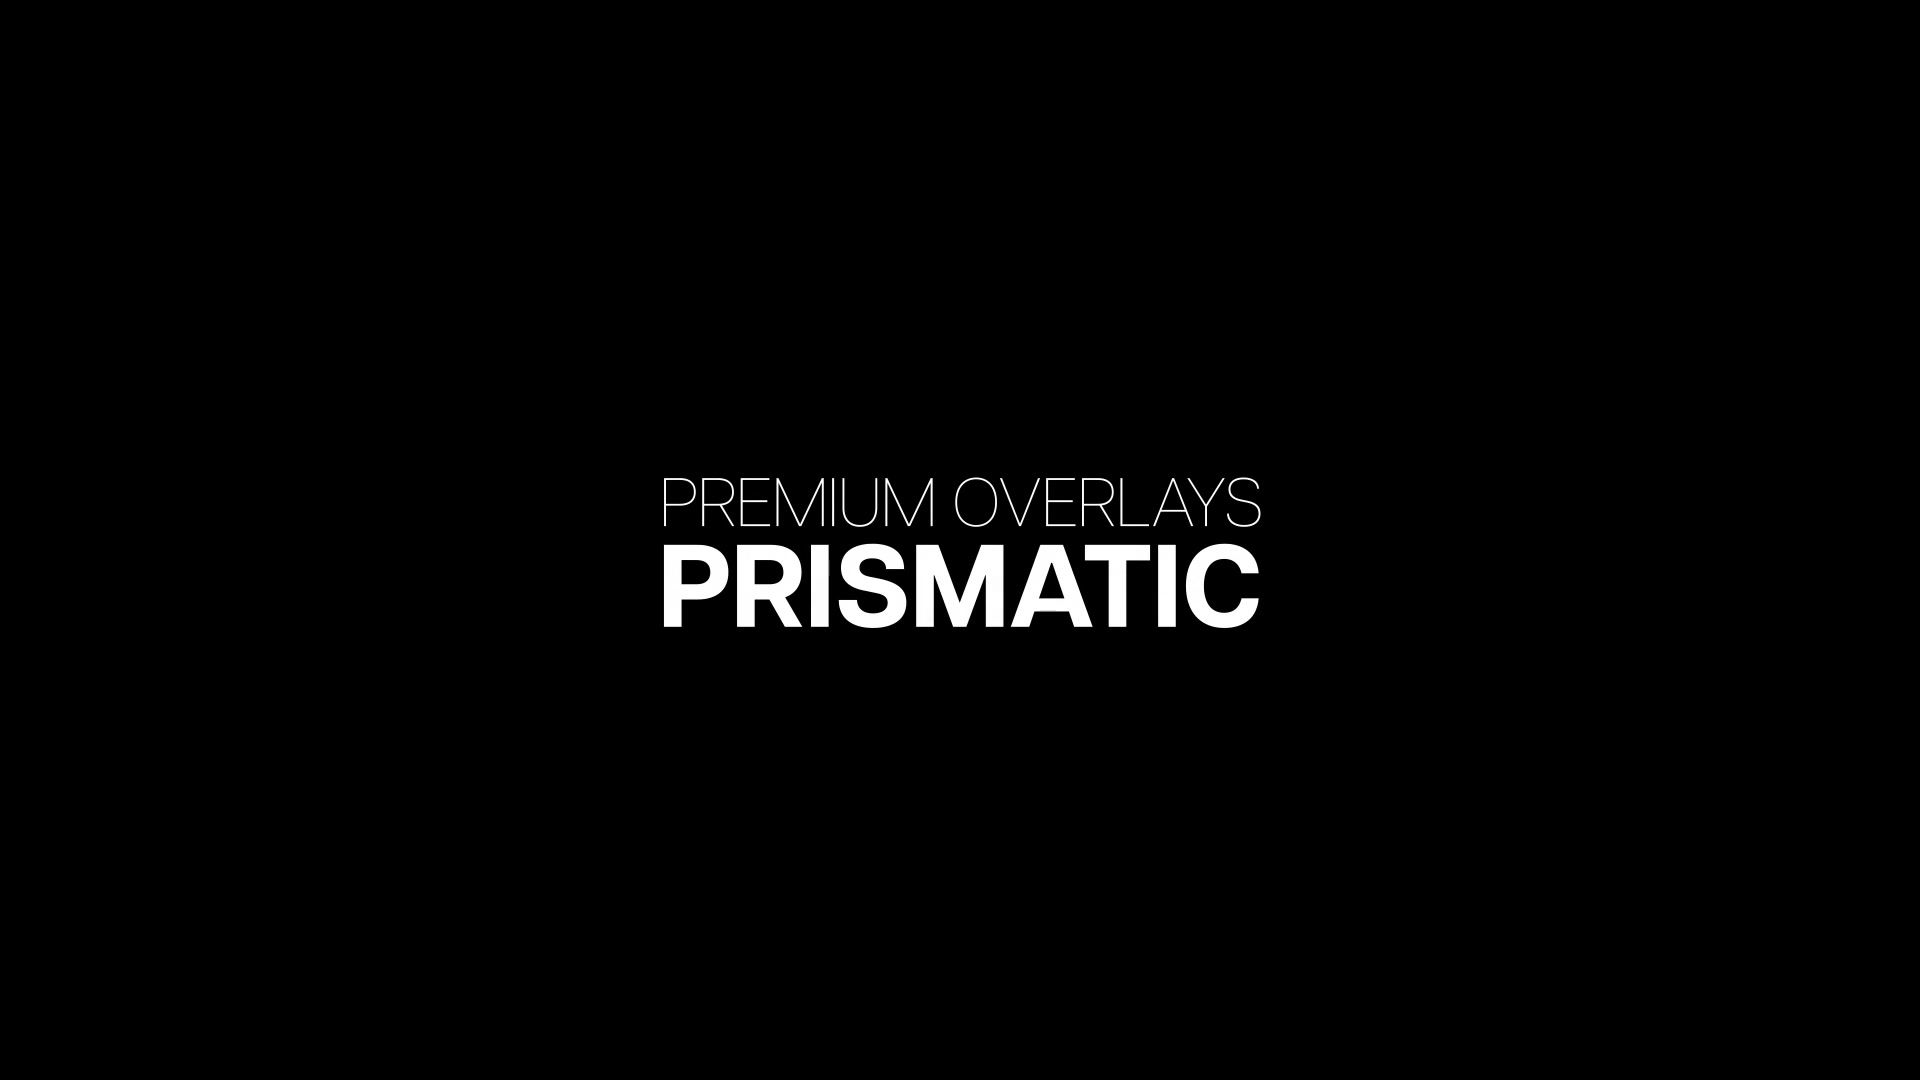 Premium Overlays Prismatic Videohive 39899003 Premiere Pro Image 13